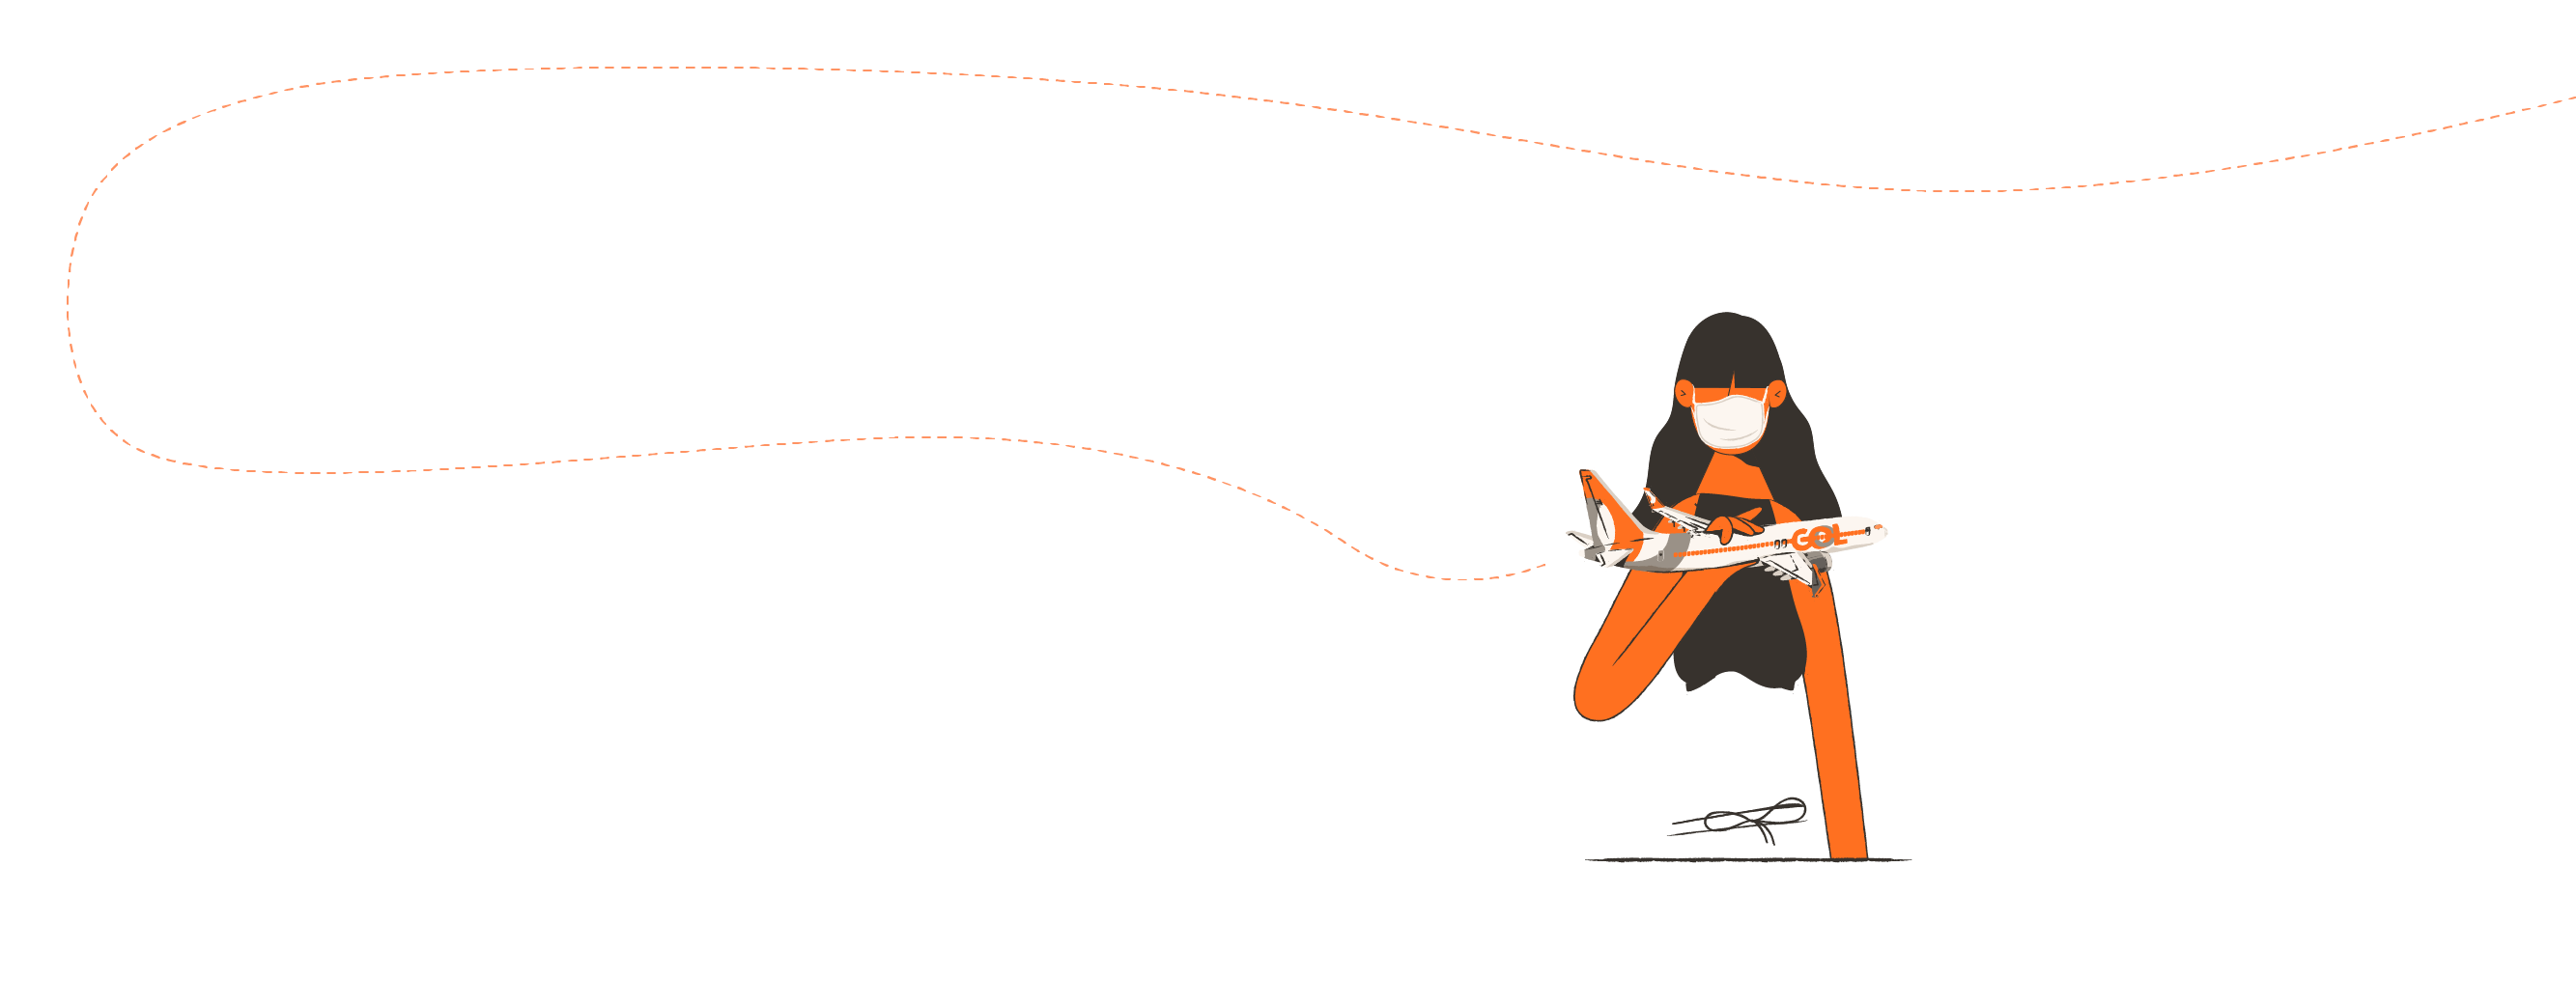 Na ilustração mulher segurando um avião de brinquedo